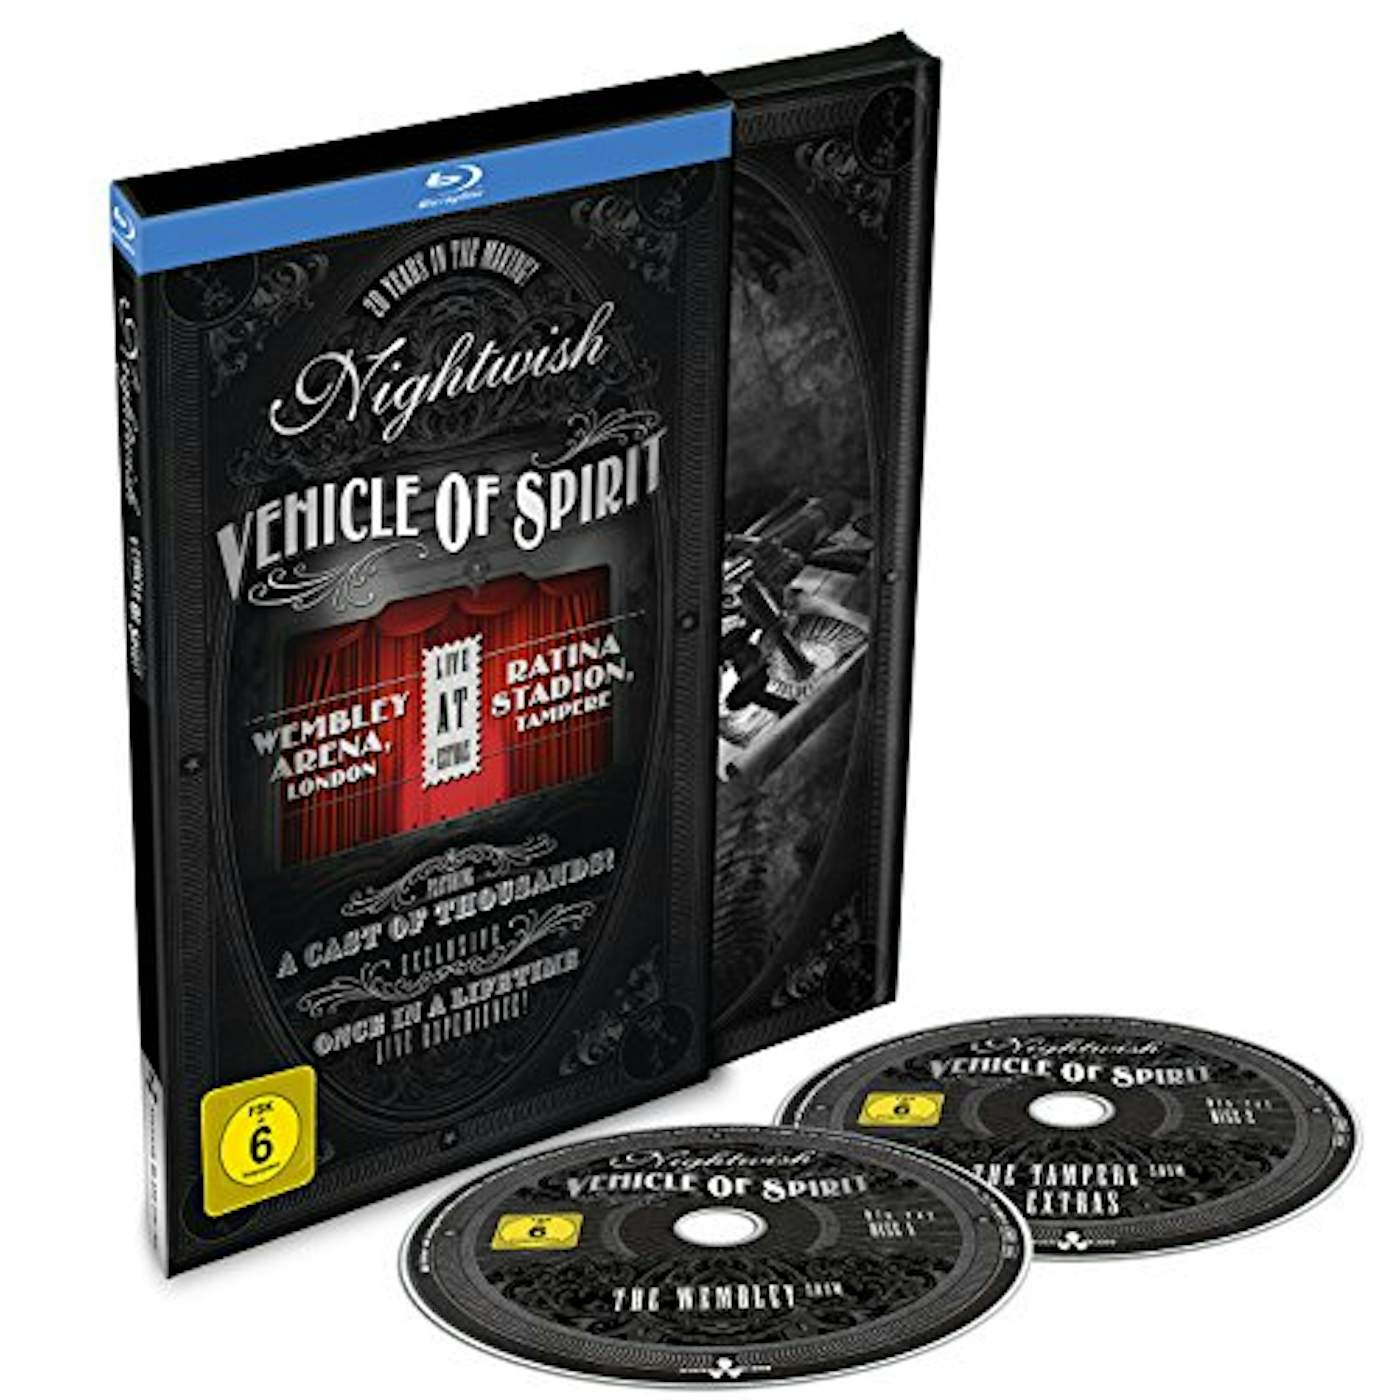 Nightwish VEHICLE OF SPIRIT Blu-ray